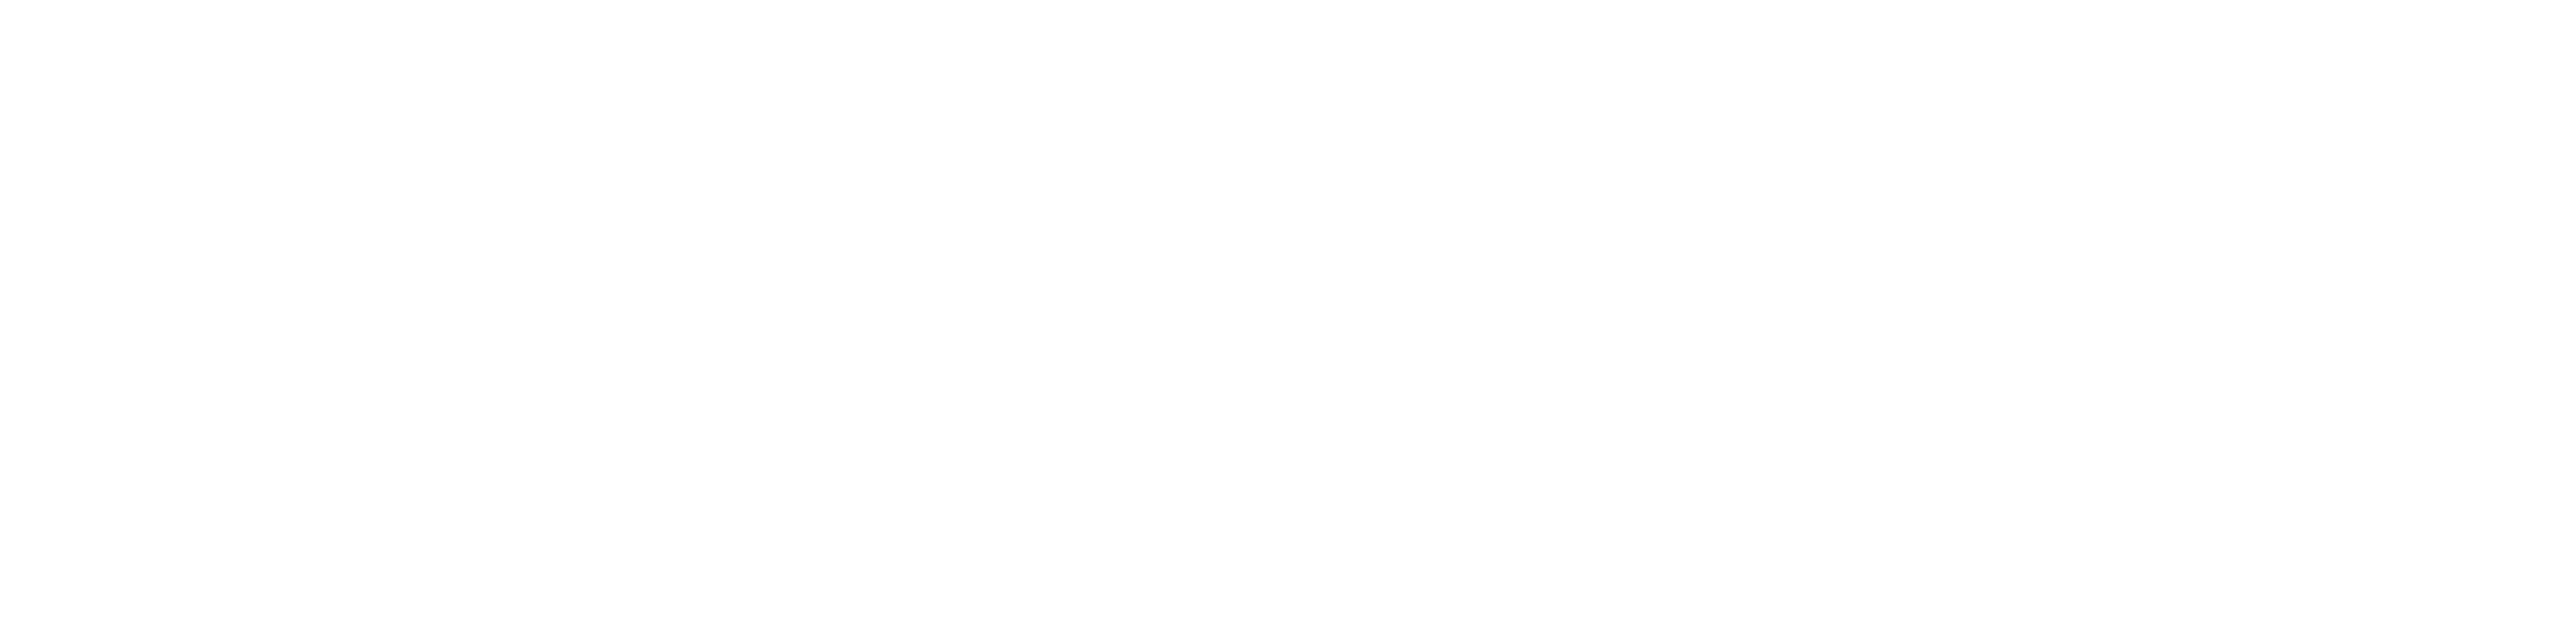 LA blockchain logo